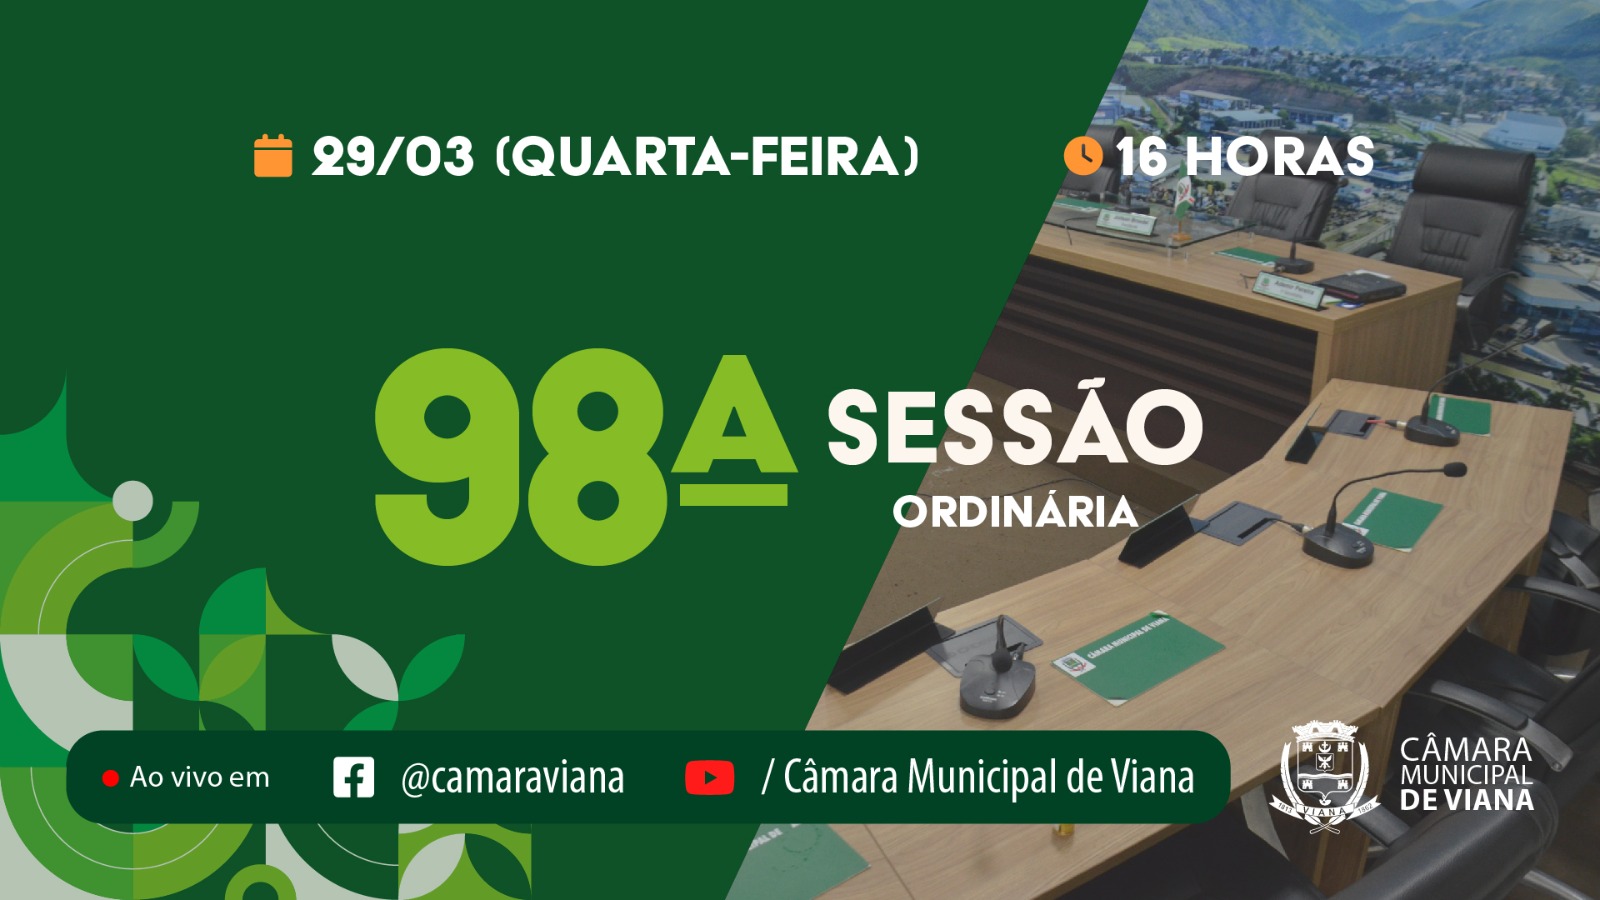 Notícia: PAUTA DA NONAGÉSIMA OITAVA (98ª) SESSÃO ORDINÁRIA 